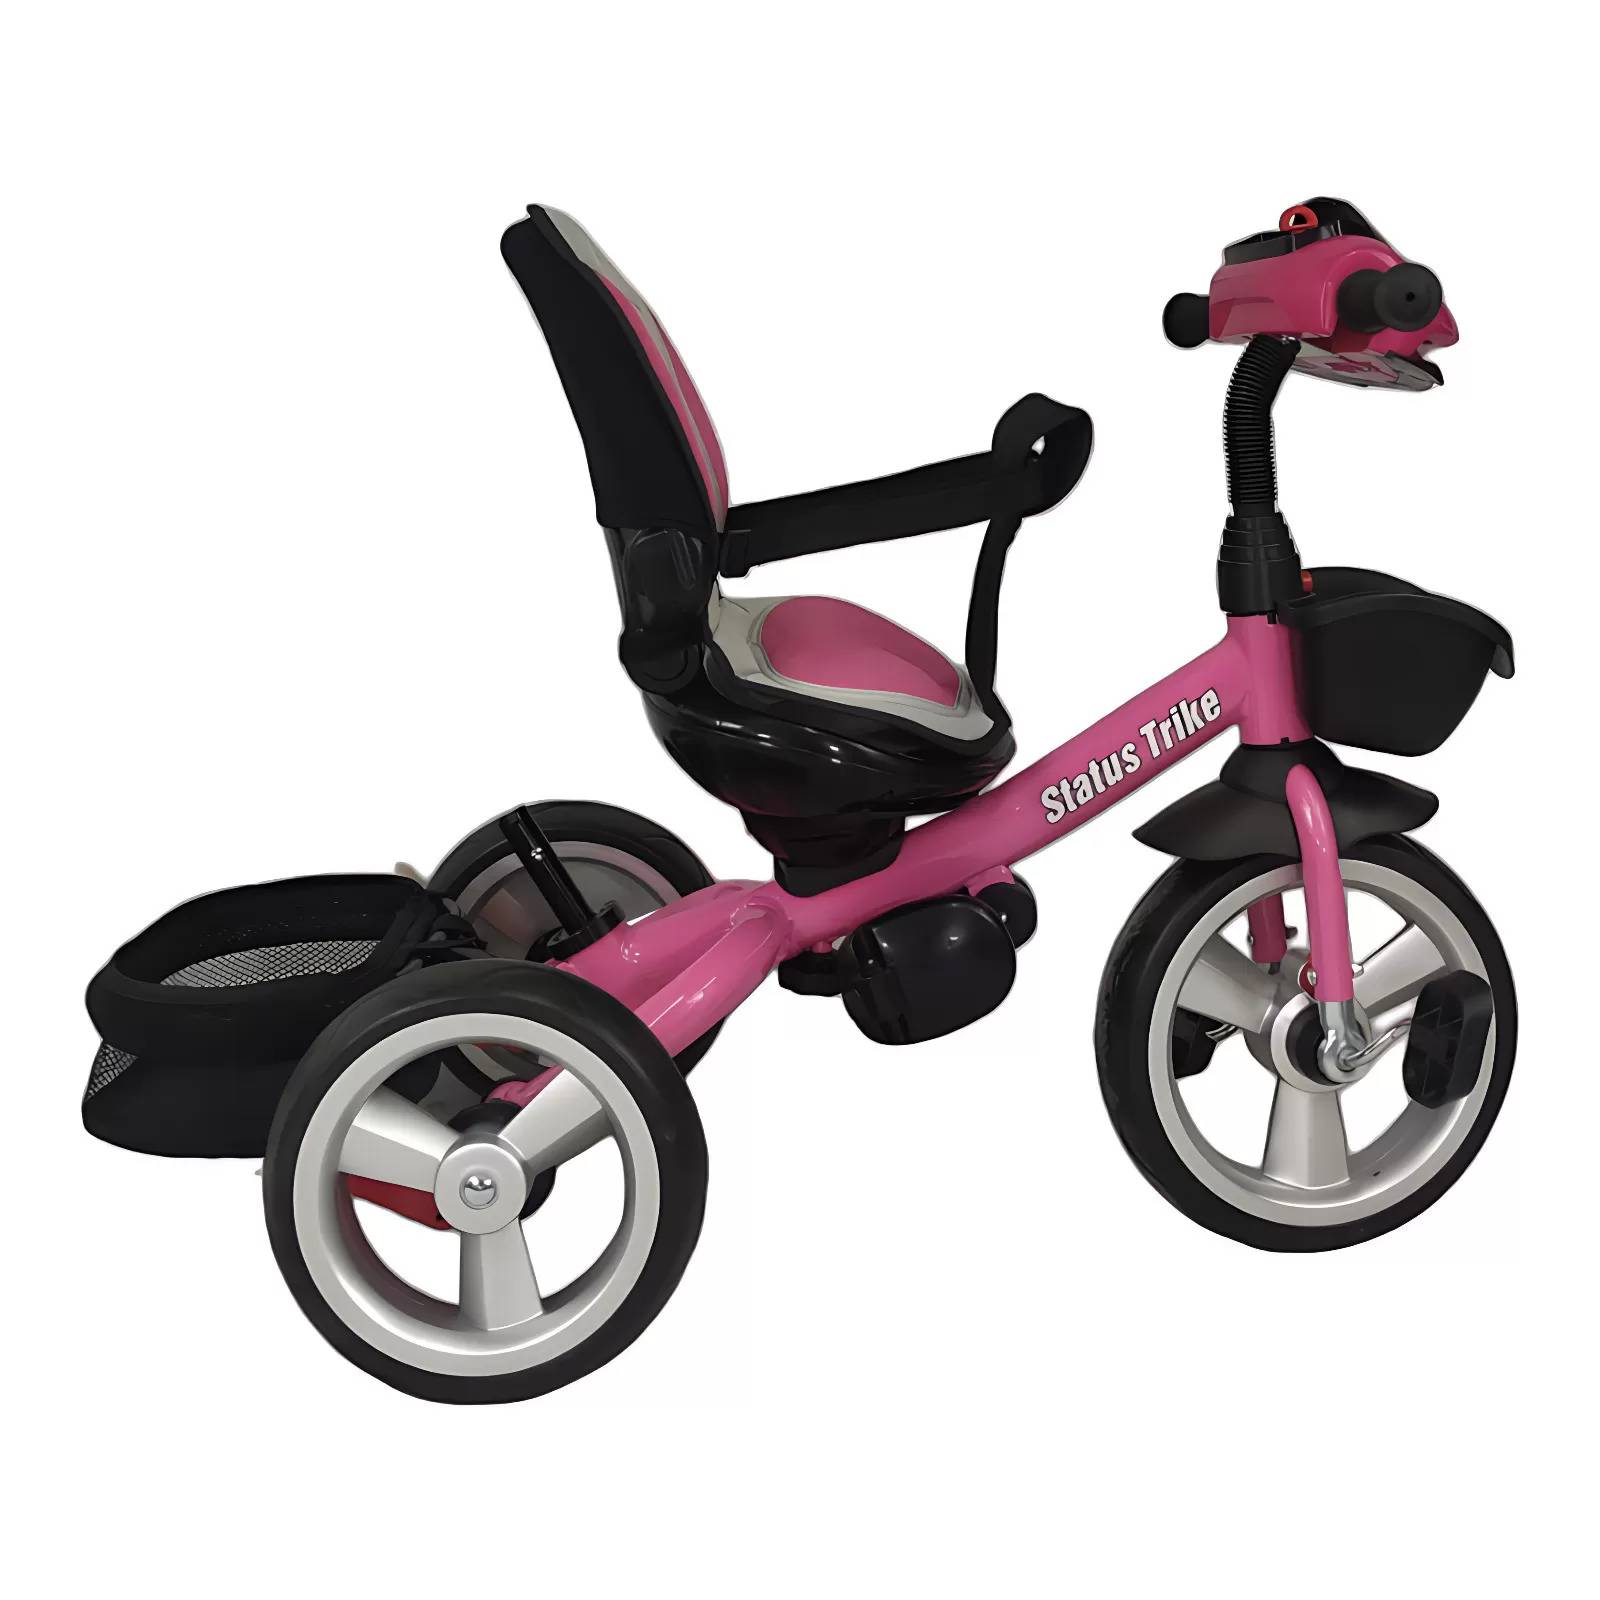  Moolo Triciclos para niños, triciclo para bebé, puede sentarse  o acostarse, toldo giratorio 4 en 1 de gran tamaño, cómodo respaldo  ajustable de 1 a 6 años de edad (color caqui) 